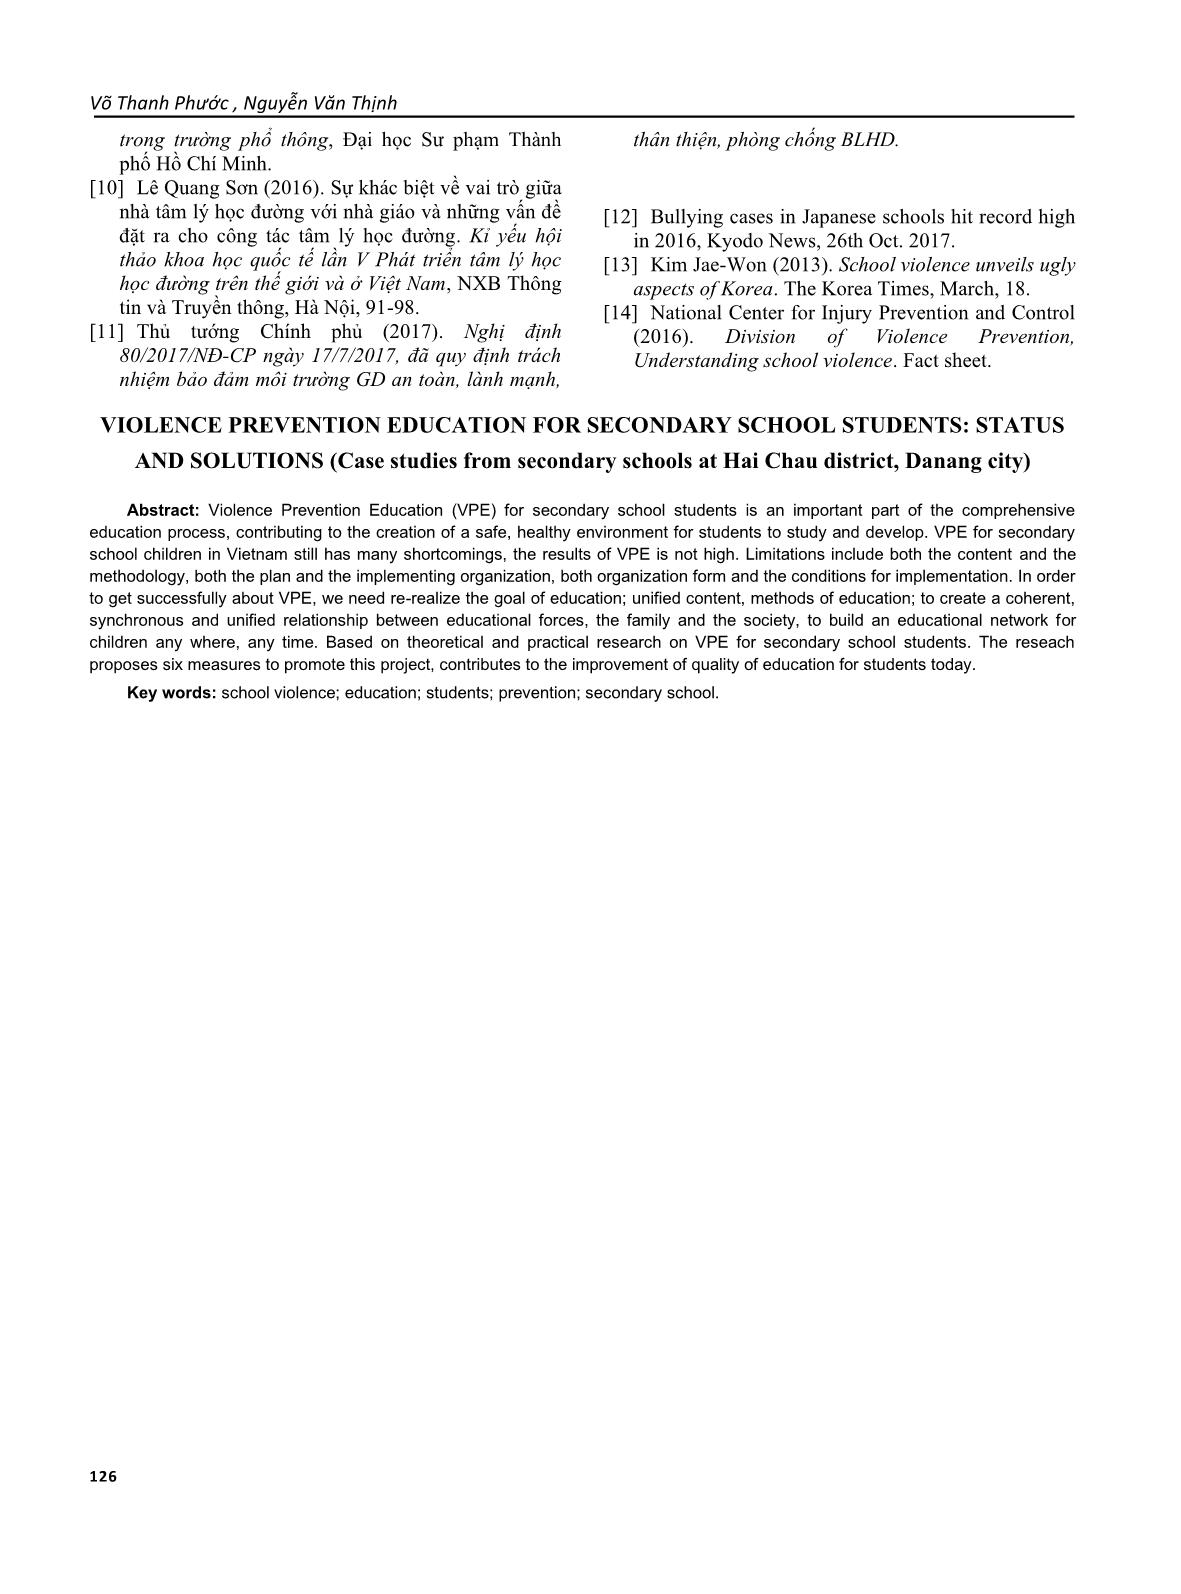 Giáo dục phòng ngừa bạo lực học đường cho học sinh trung học cơ sở: thực trạng và giải pháp (nghiên cứu tại các trường THCS quận Hải châu thành phố Đà Nẵng) trang 9